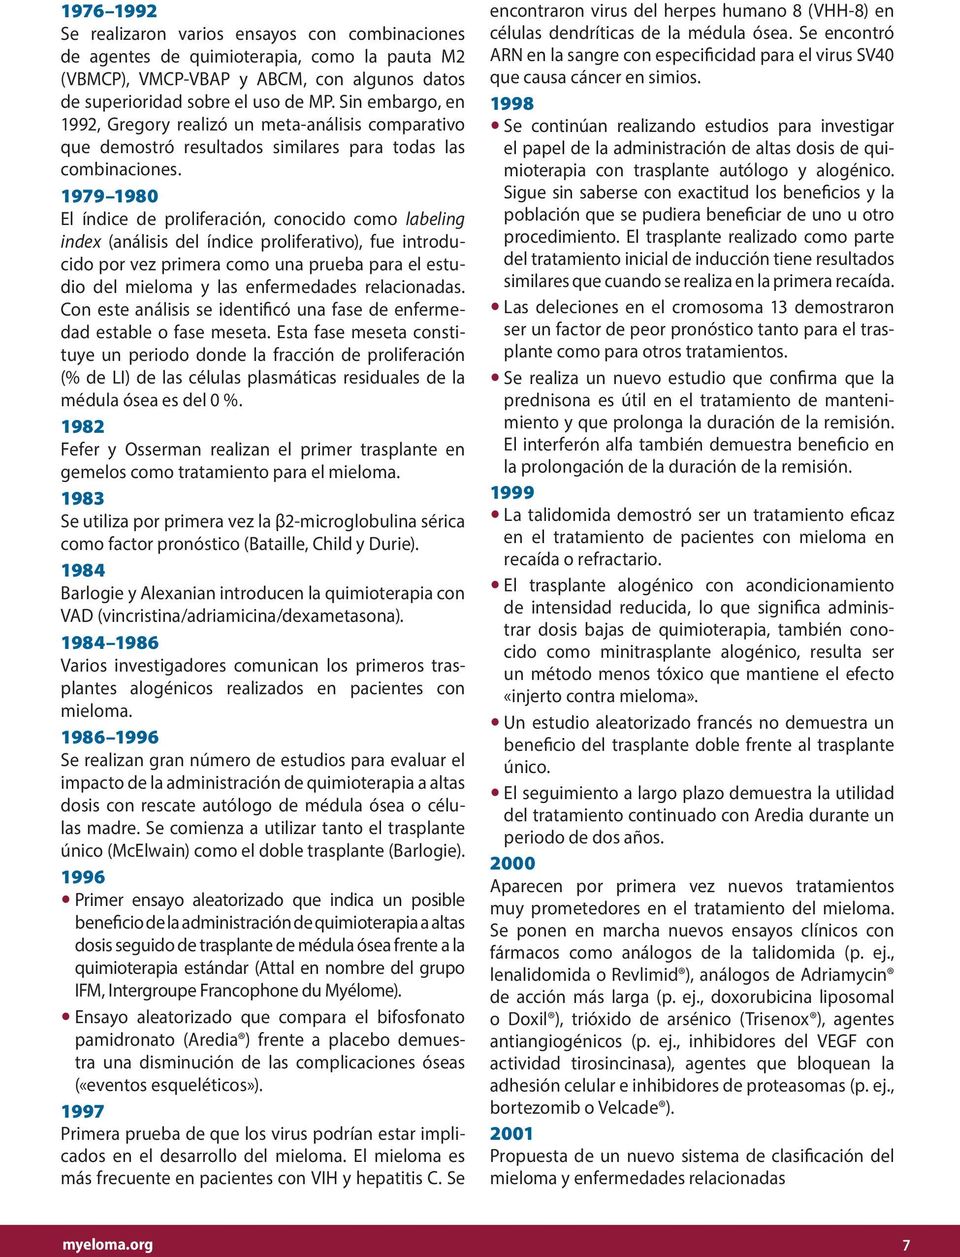 1979 1980 El índice de proliferación, conocido como labeling index (análisis del índice proliferativo), fue introducido por vez primera como una prueba para el estudio del mieloma y las enfermedades